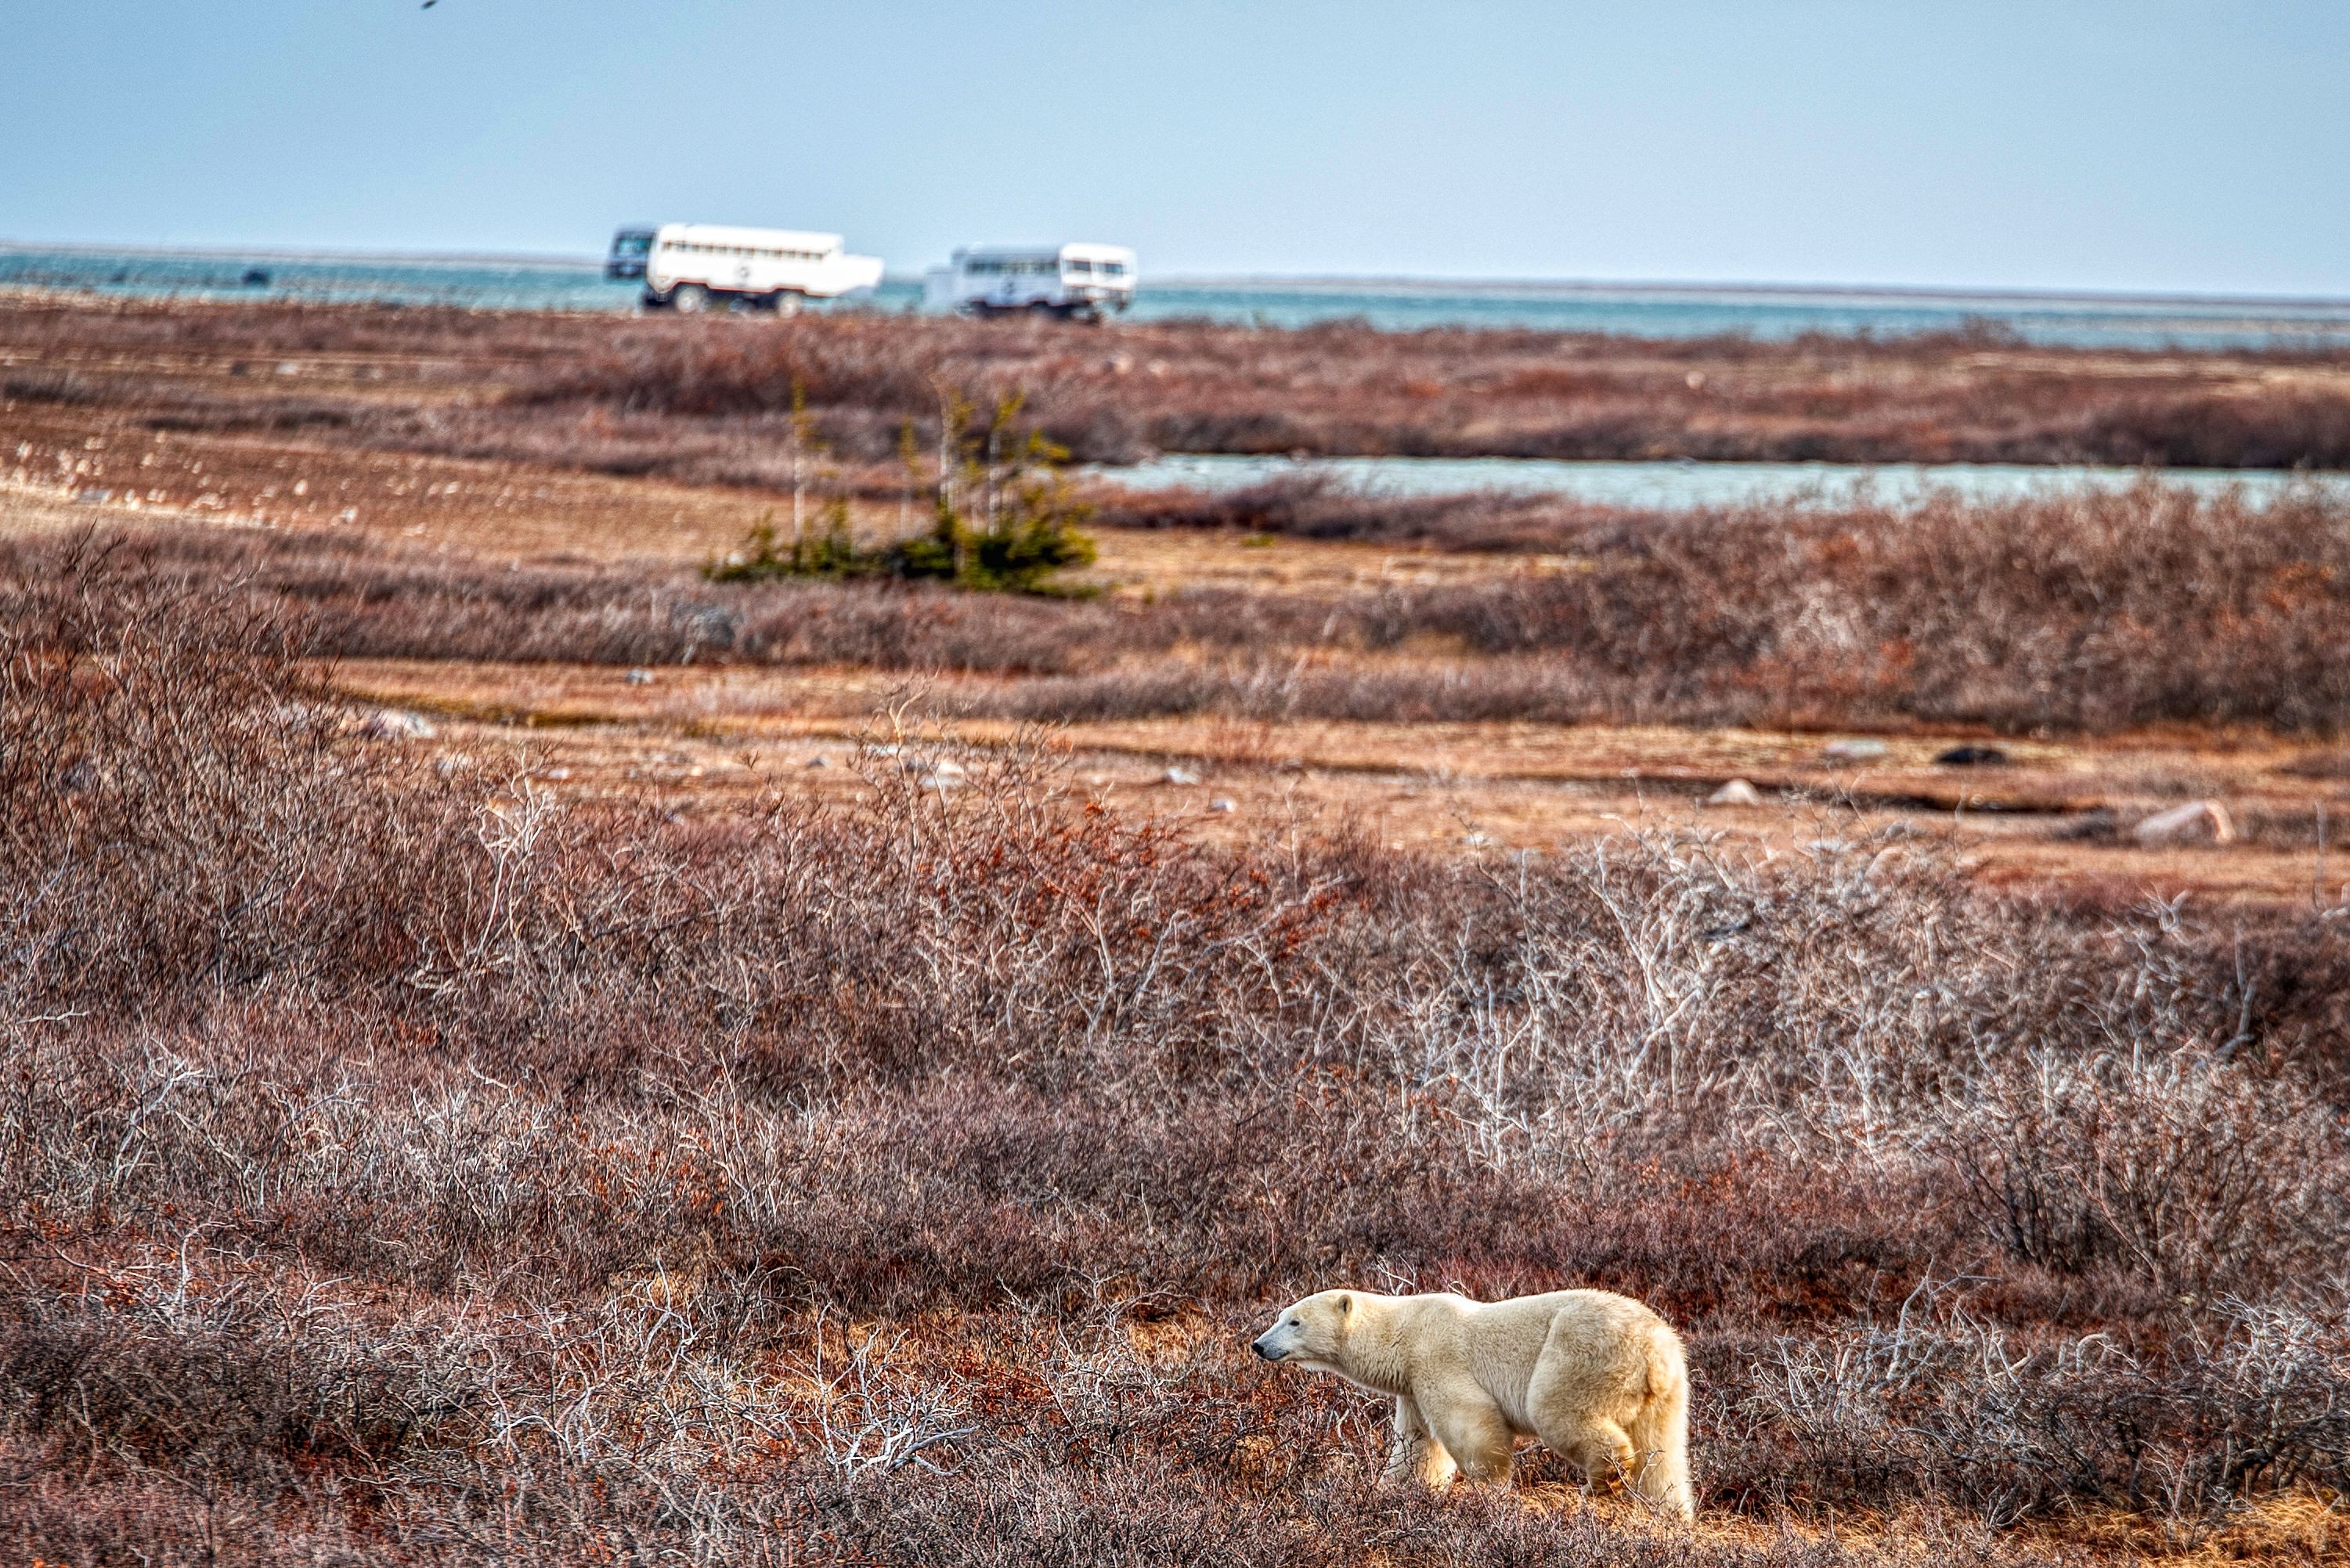 A polar bear in the Churchill Wildlife Management Area